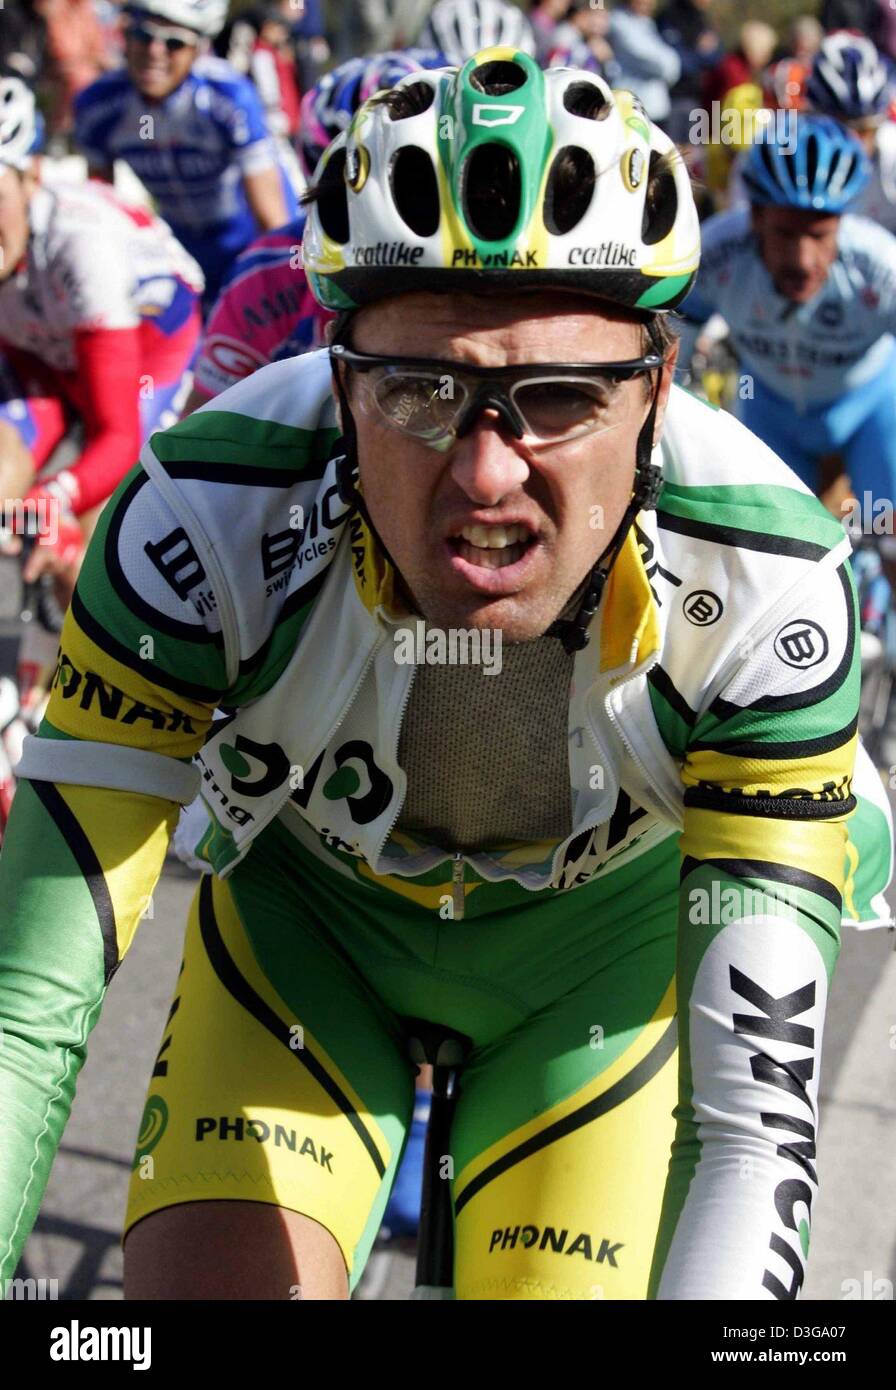 (Afp) - Un fichier photo datée du 16 octobre 2004 de Alex Zuelle cycliste suisse de l'équipe Phonak en action durant le tour de Lombardie, près de Côme, en Italie. Zuelle terminera sa carrière de 14 ans avec une partie de ses fans le 30 octobre, selon un communiqué sur son site internet le jeudi 21 octobre 2004. La carrière de Zuelle était en surbrillance le dos à dos des victoires dans la Vuelta a Espana à 199 Banque D'Images